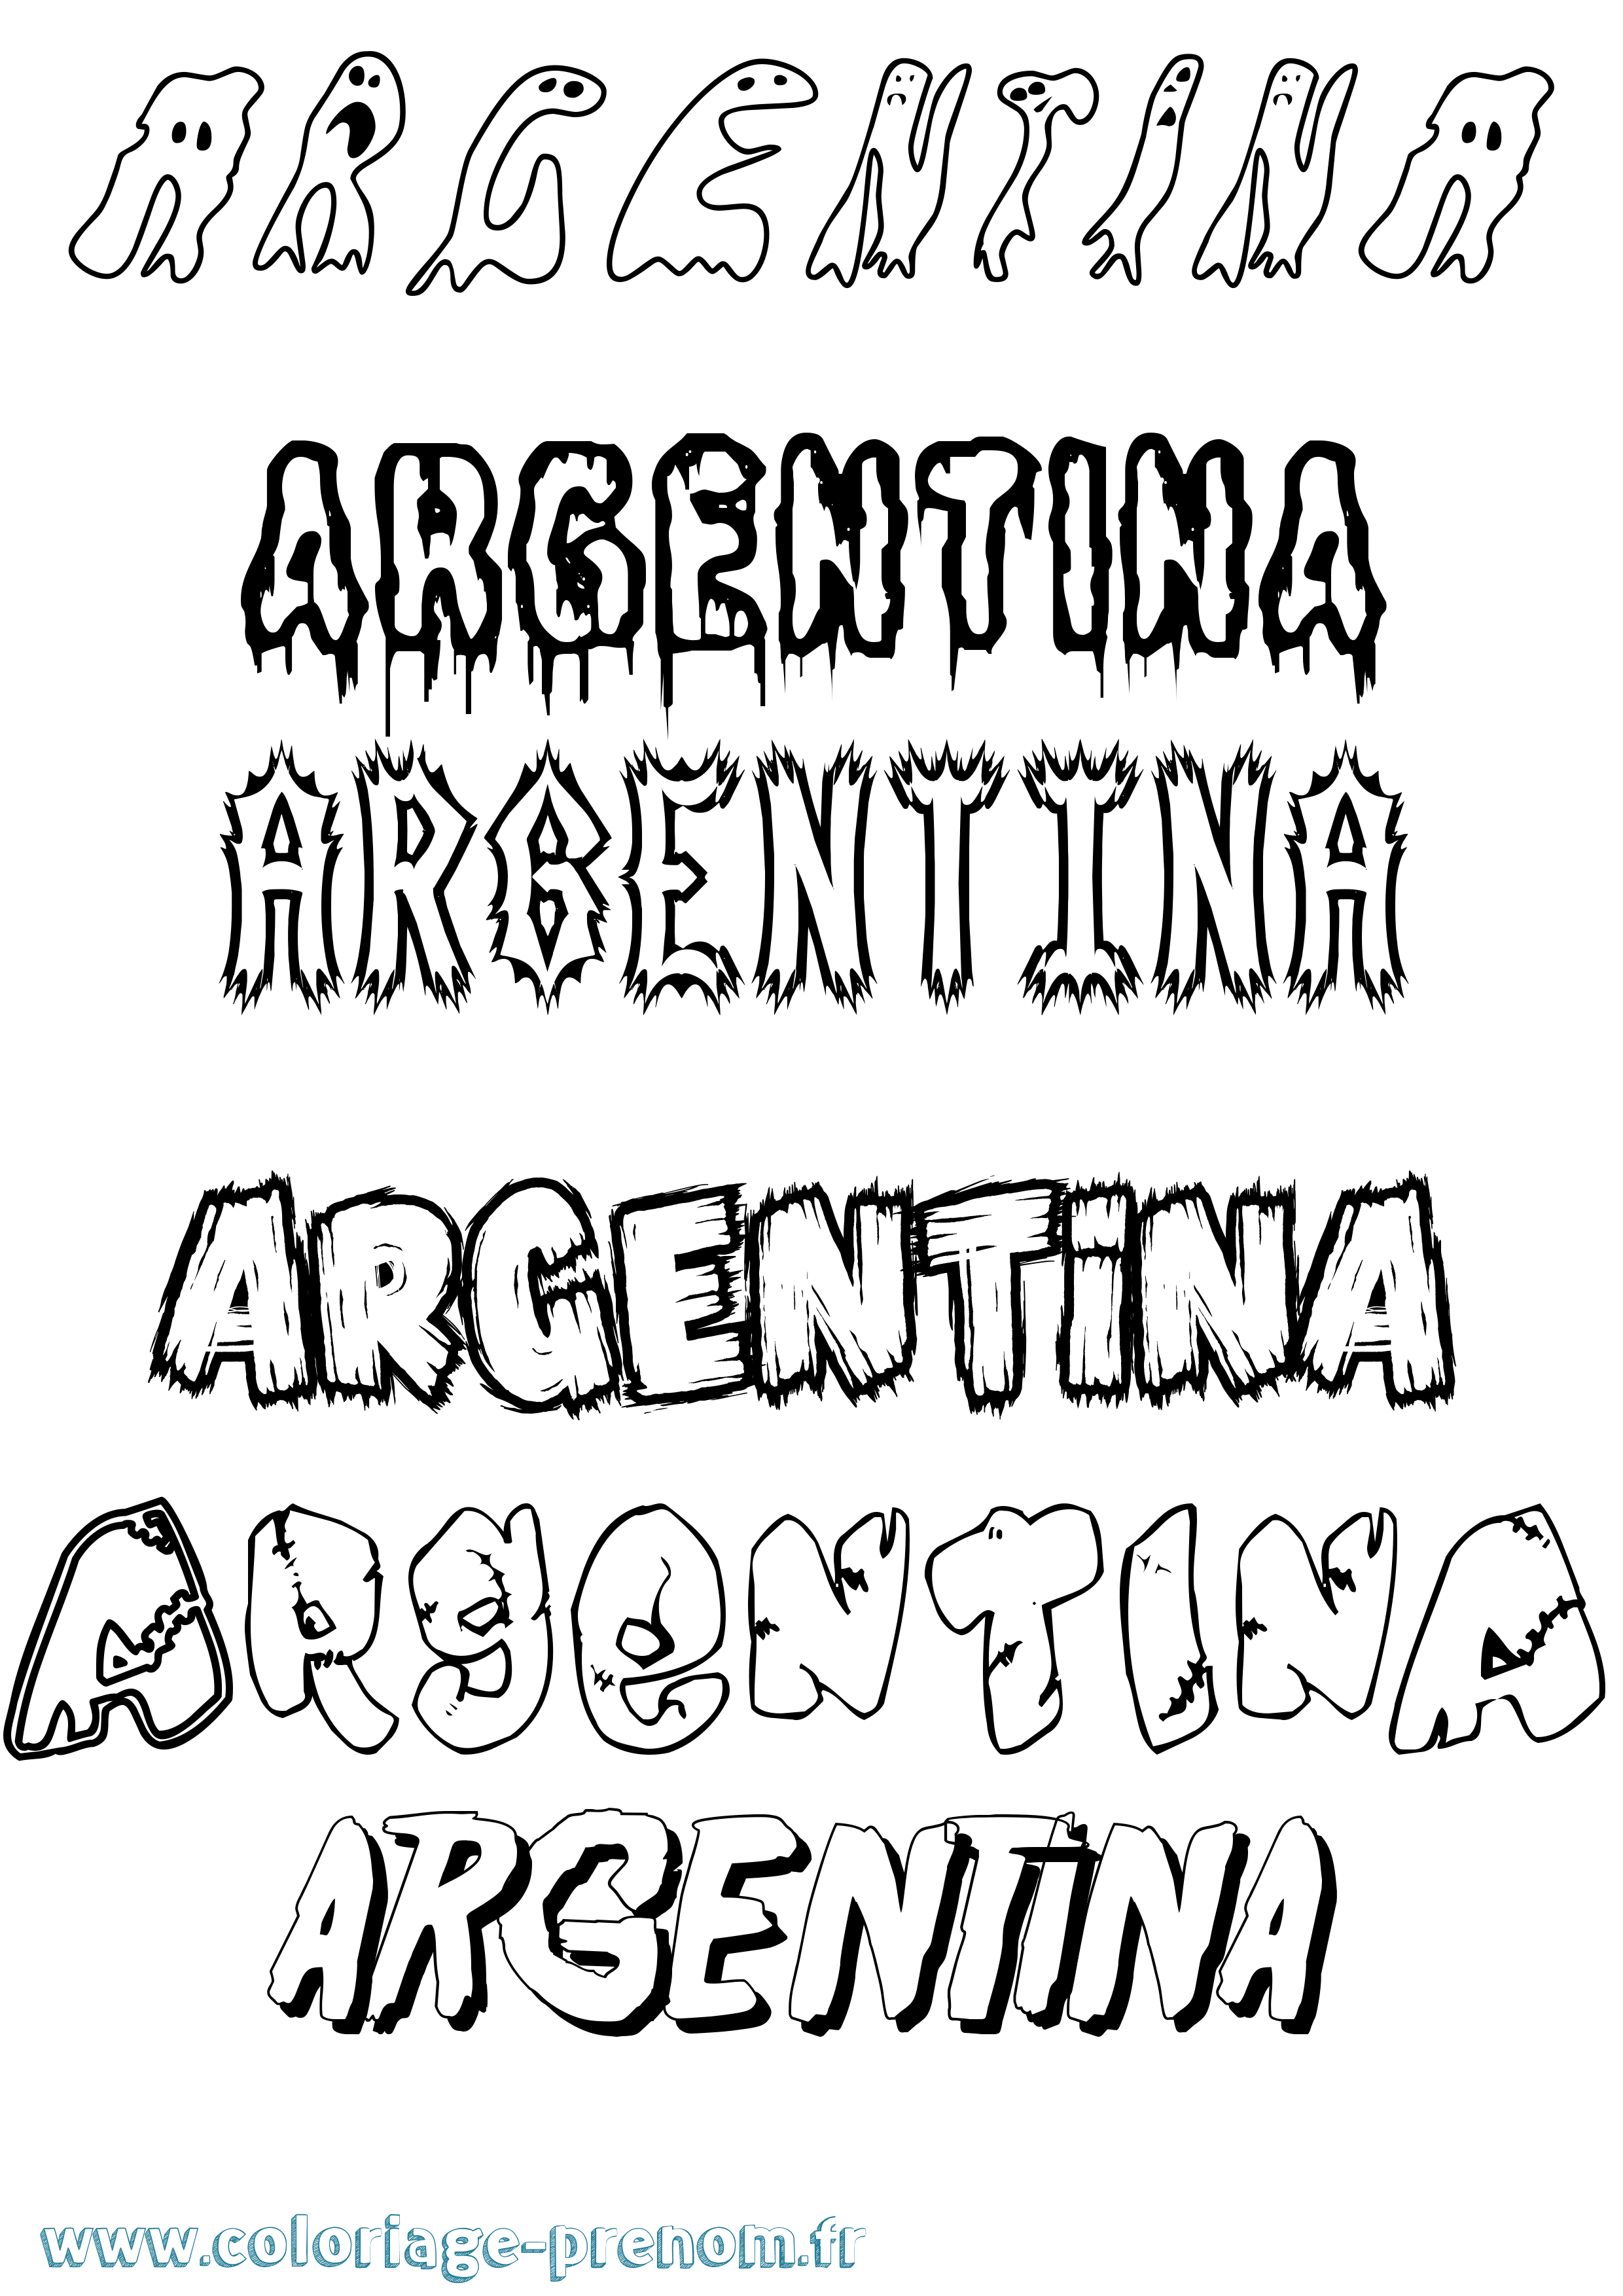 Coloriage prénom Argentina Frisson